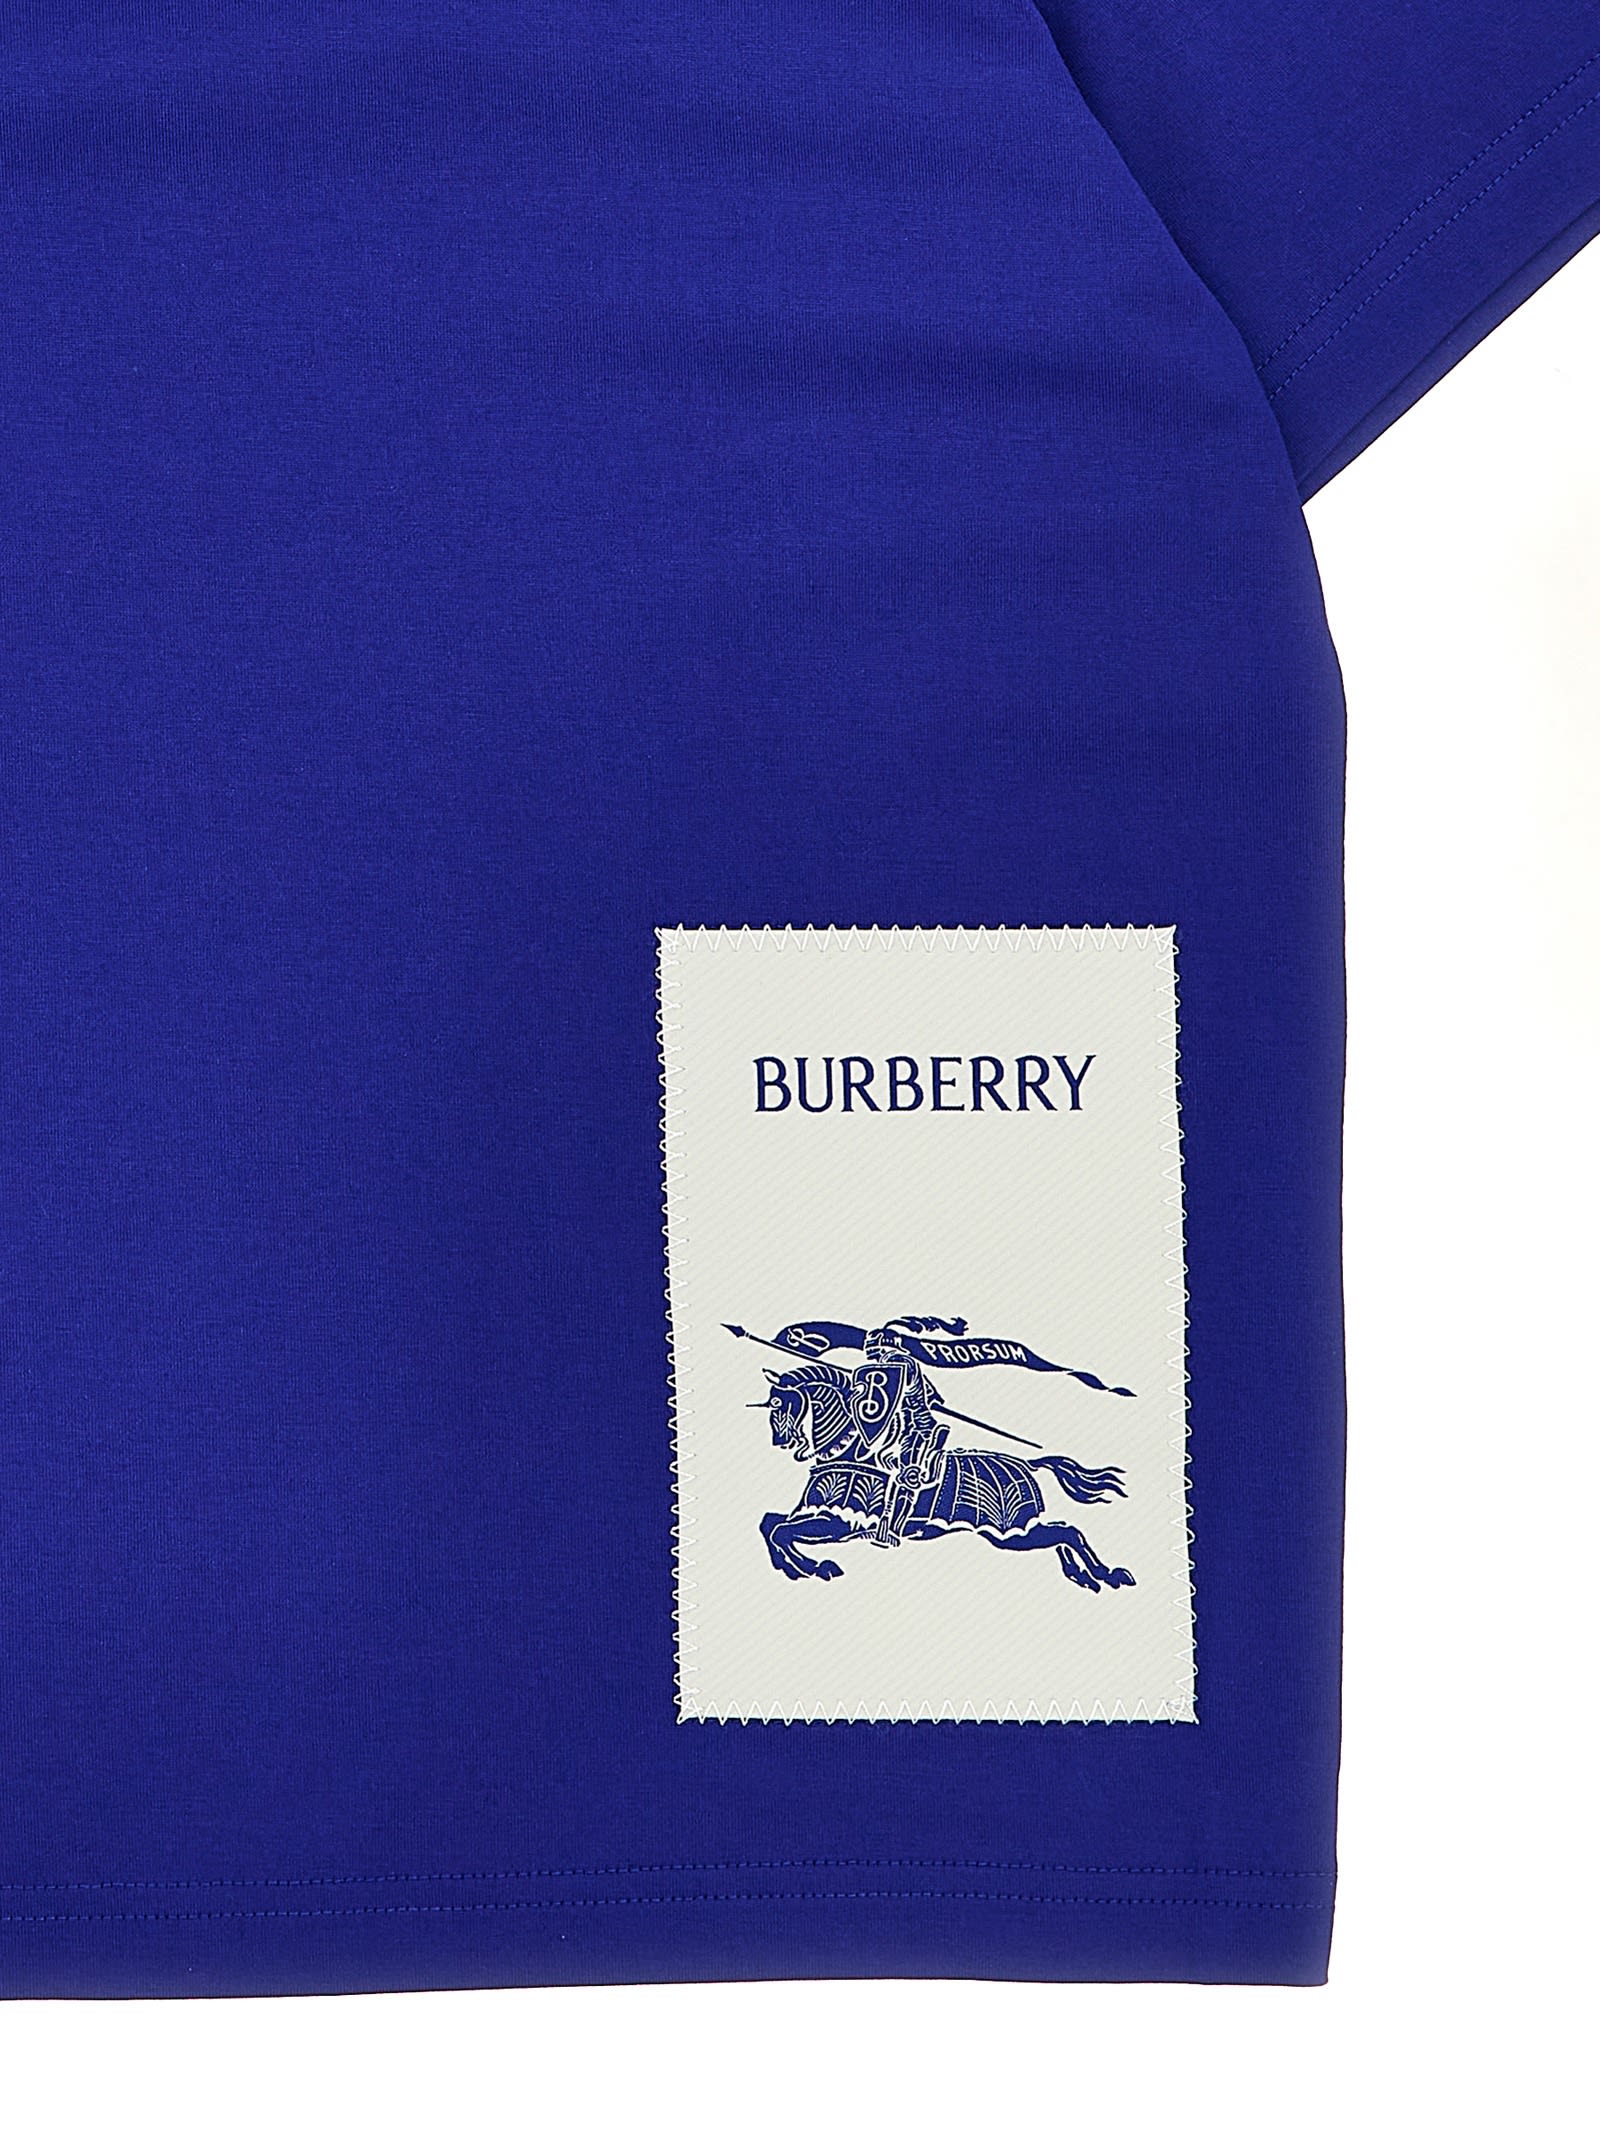 Shop Burberry Cedar T-shirt In Blue